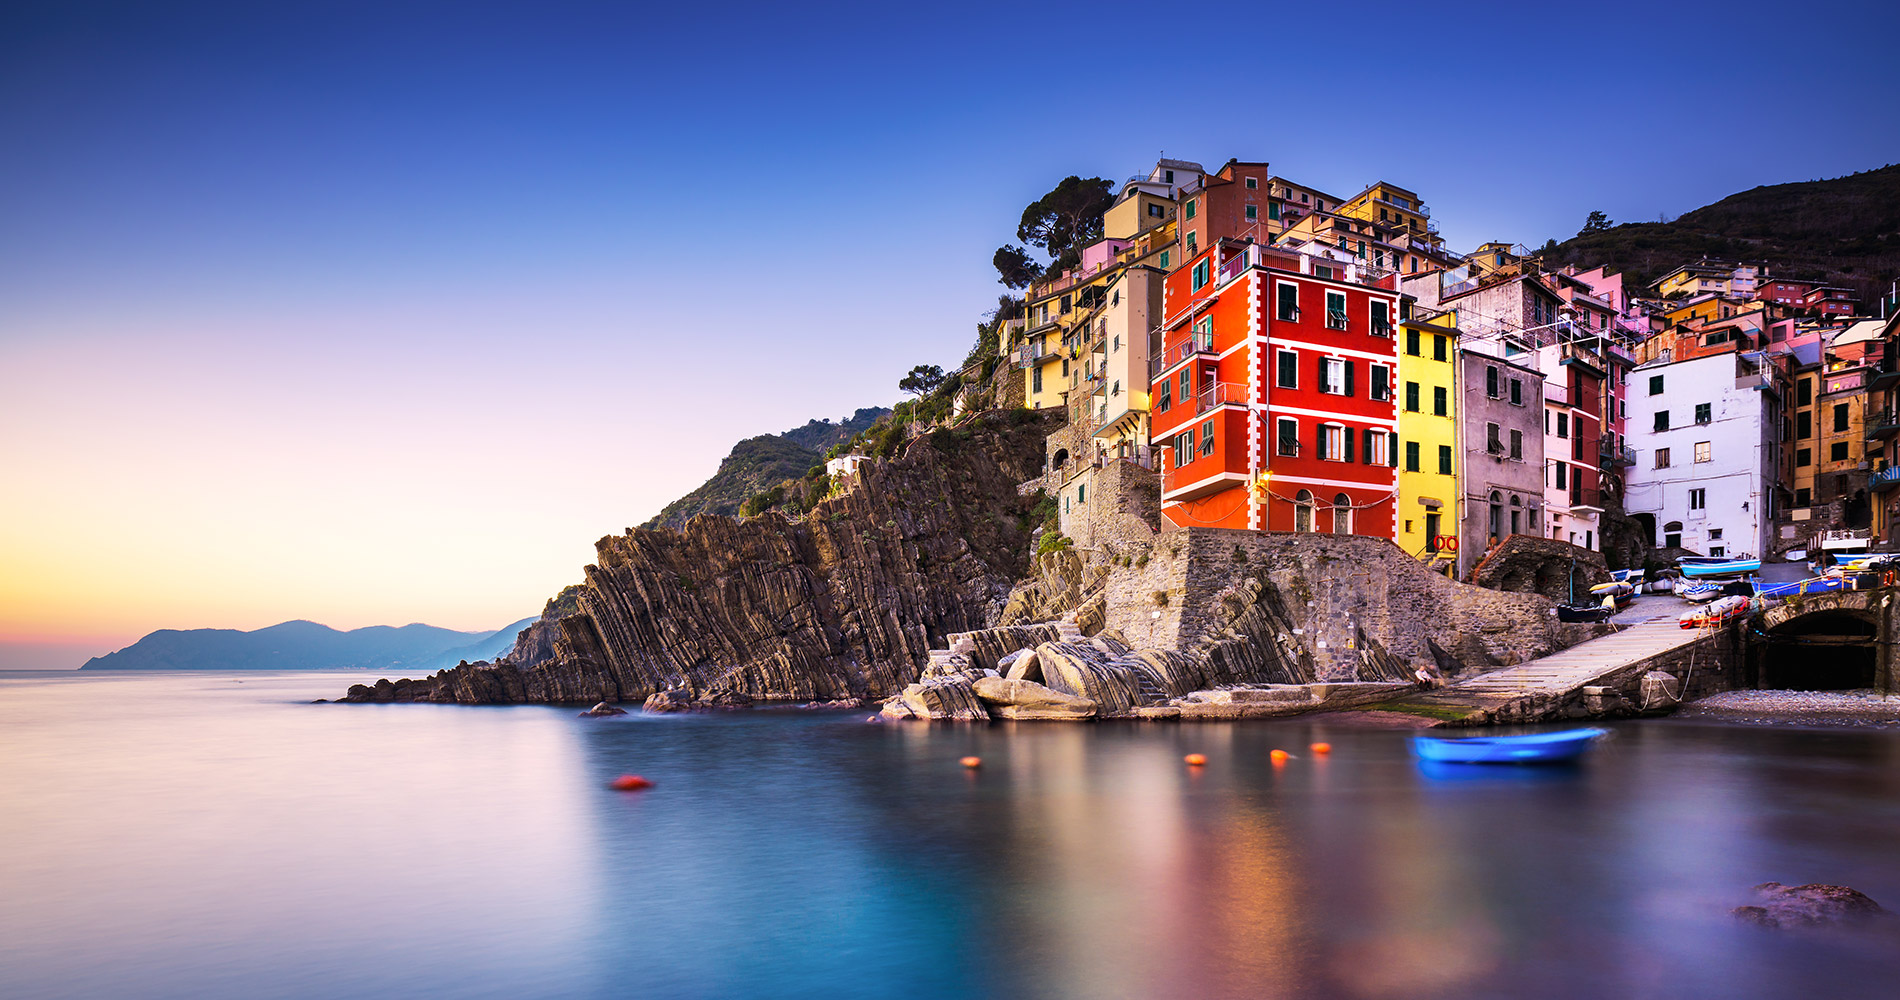 Foto dell'incantevole porticciolo di Riomaggiore nelle Cinque Terre